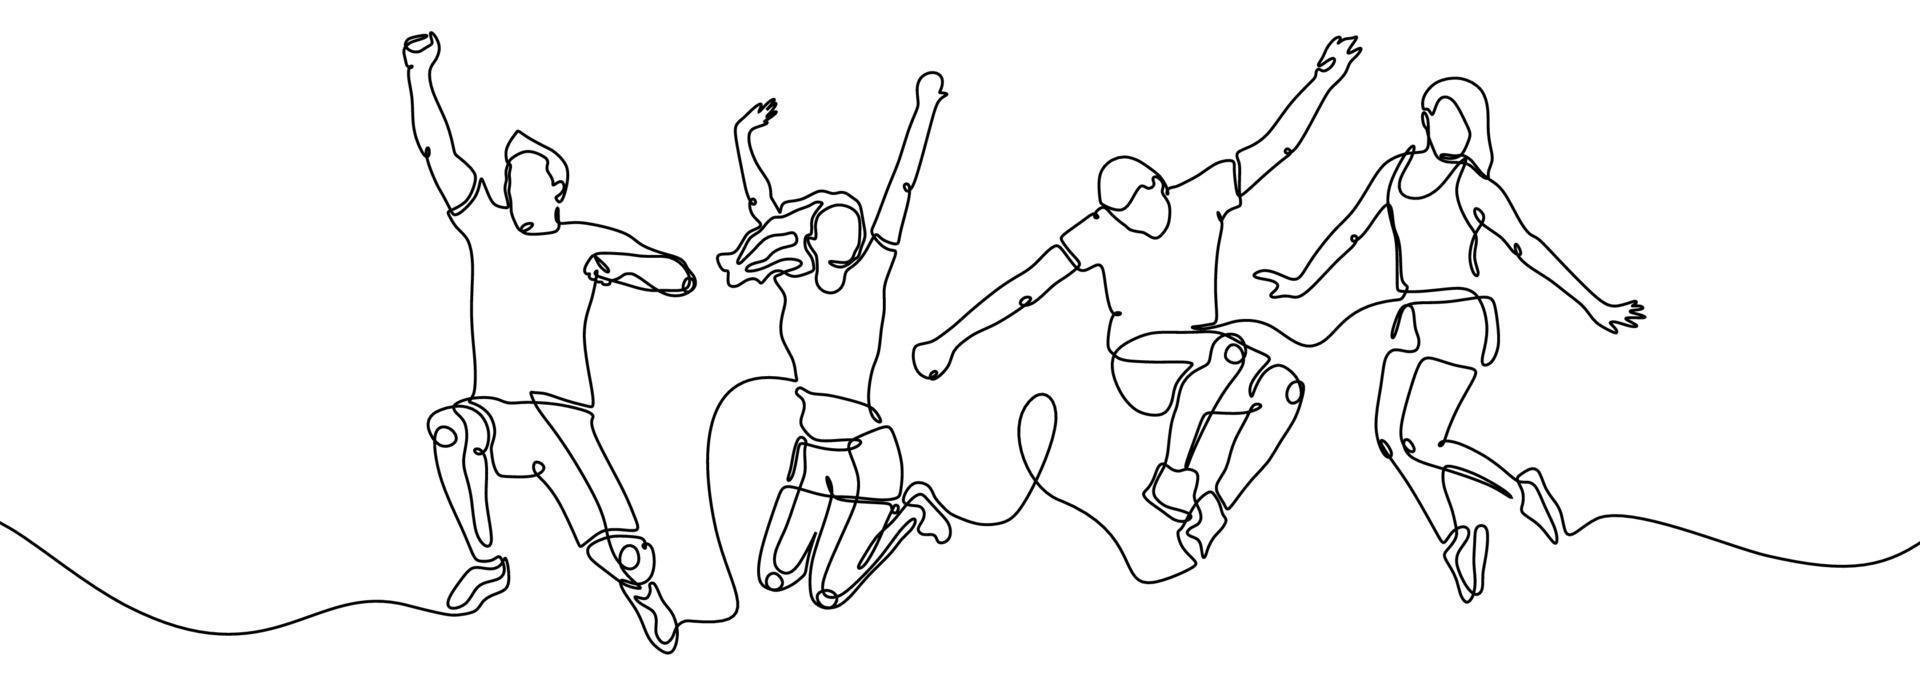 dessin continu d'une ligne de saut de membres heureux de l'équipe vecteur